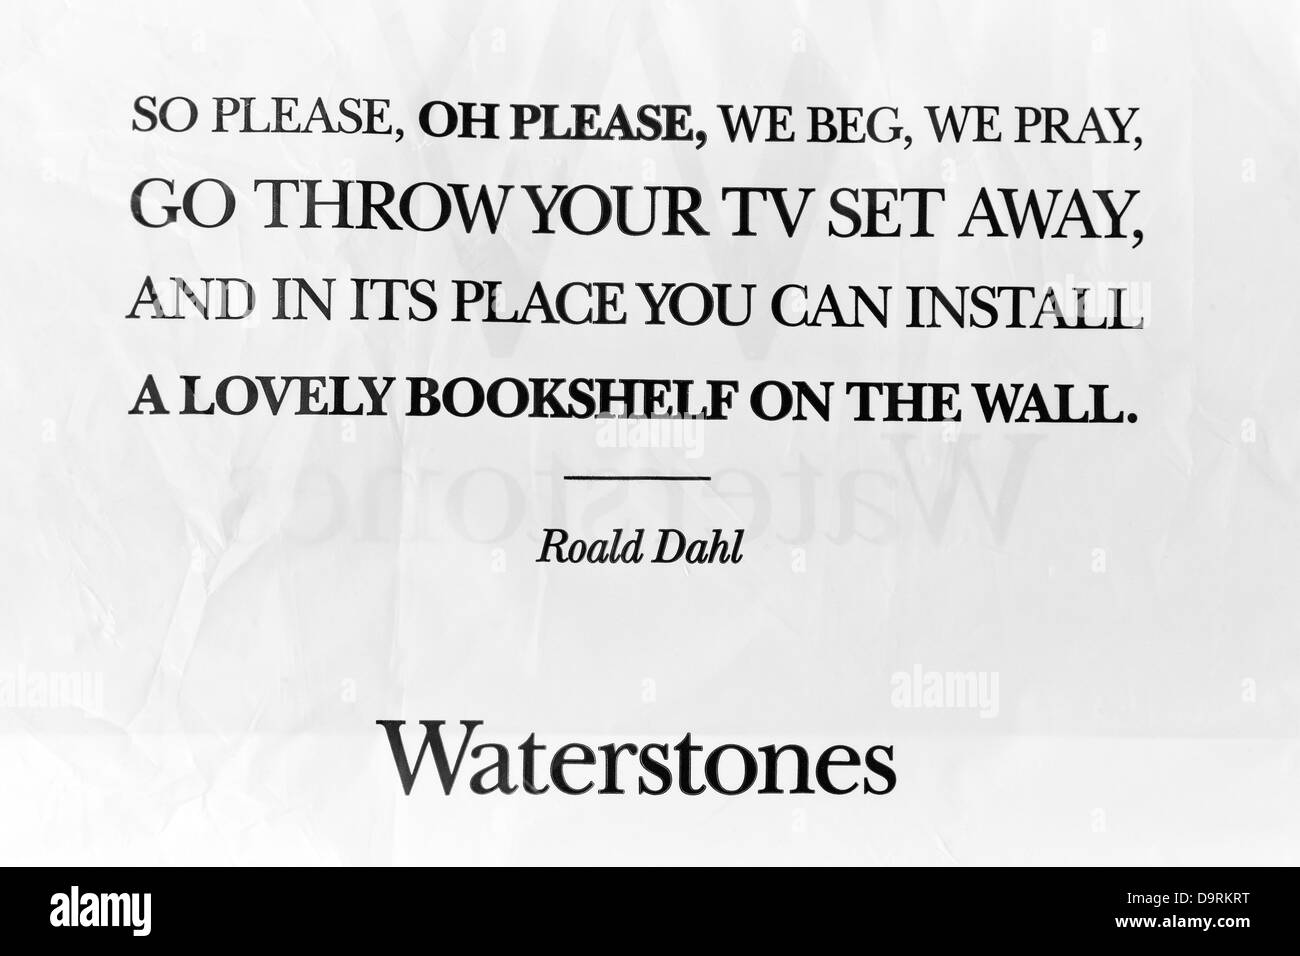 Roald Dahl Nachricht auf Waterstones Tragetasche Stockfoto